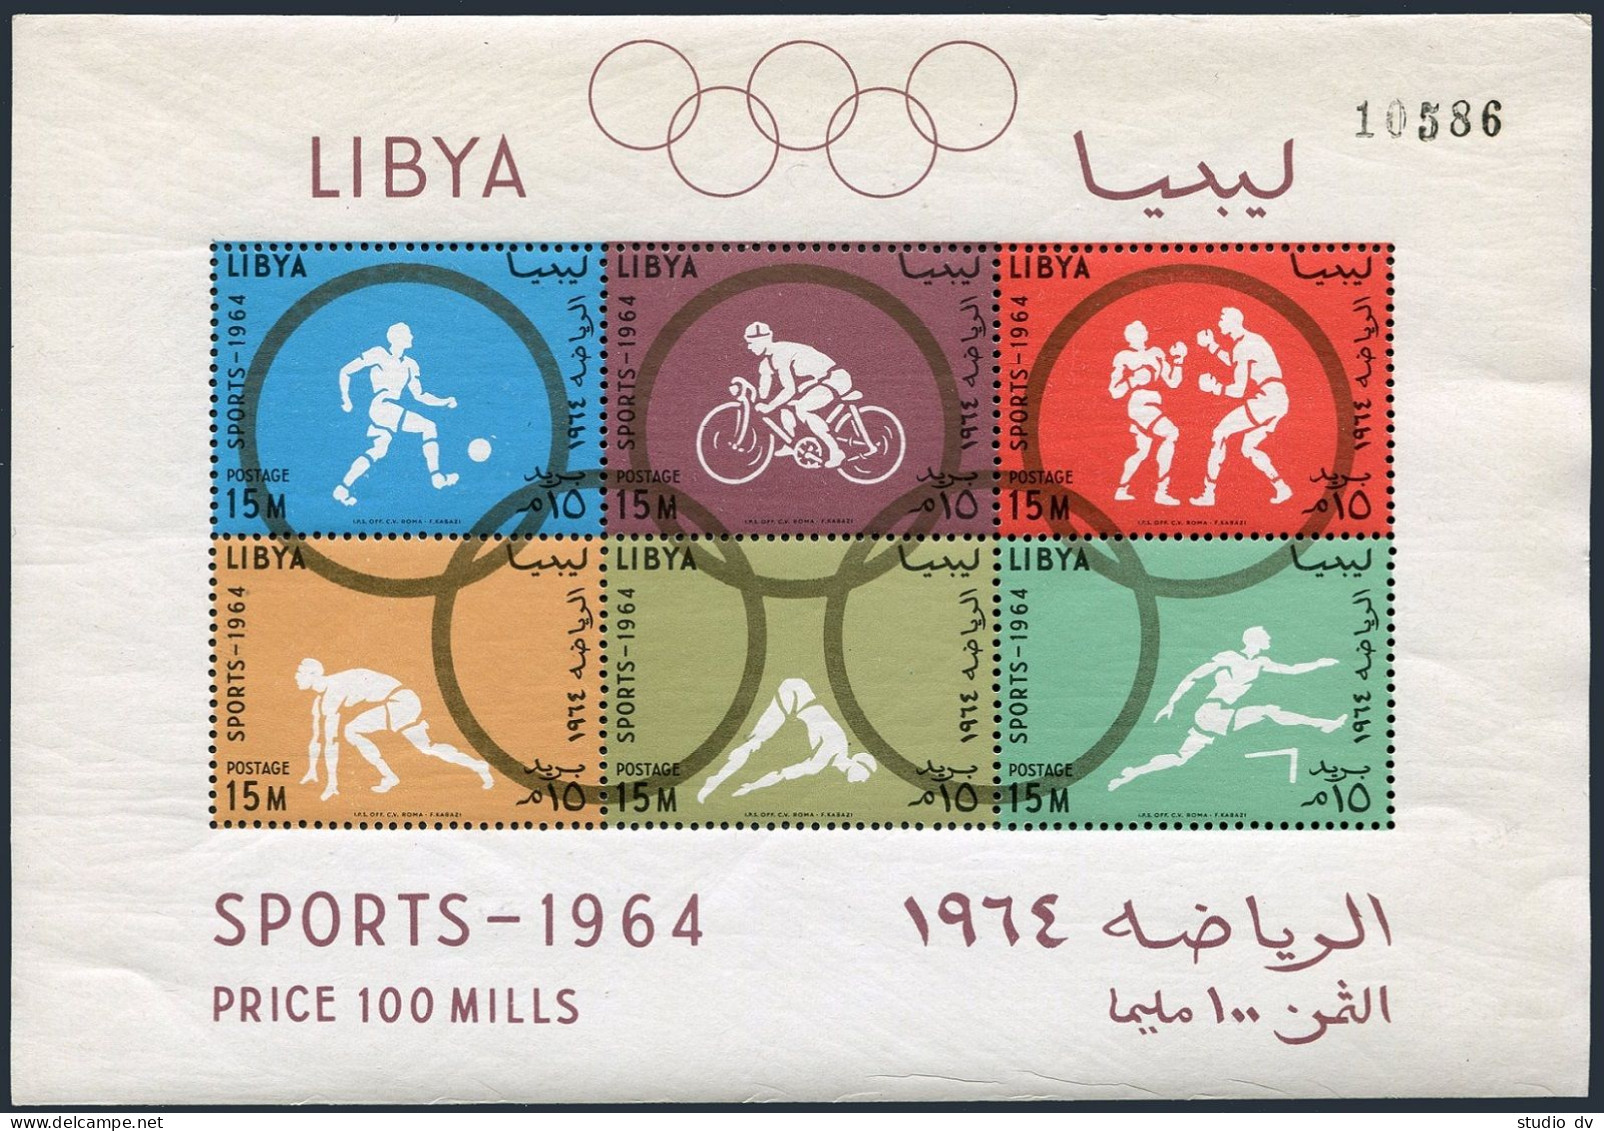 Libya 263b Perf,imperf Sheets,MNH. Olympics Tokyo-1964.Soccer,Bicycling,Boxing, - Libië